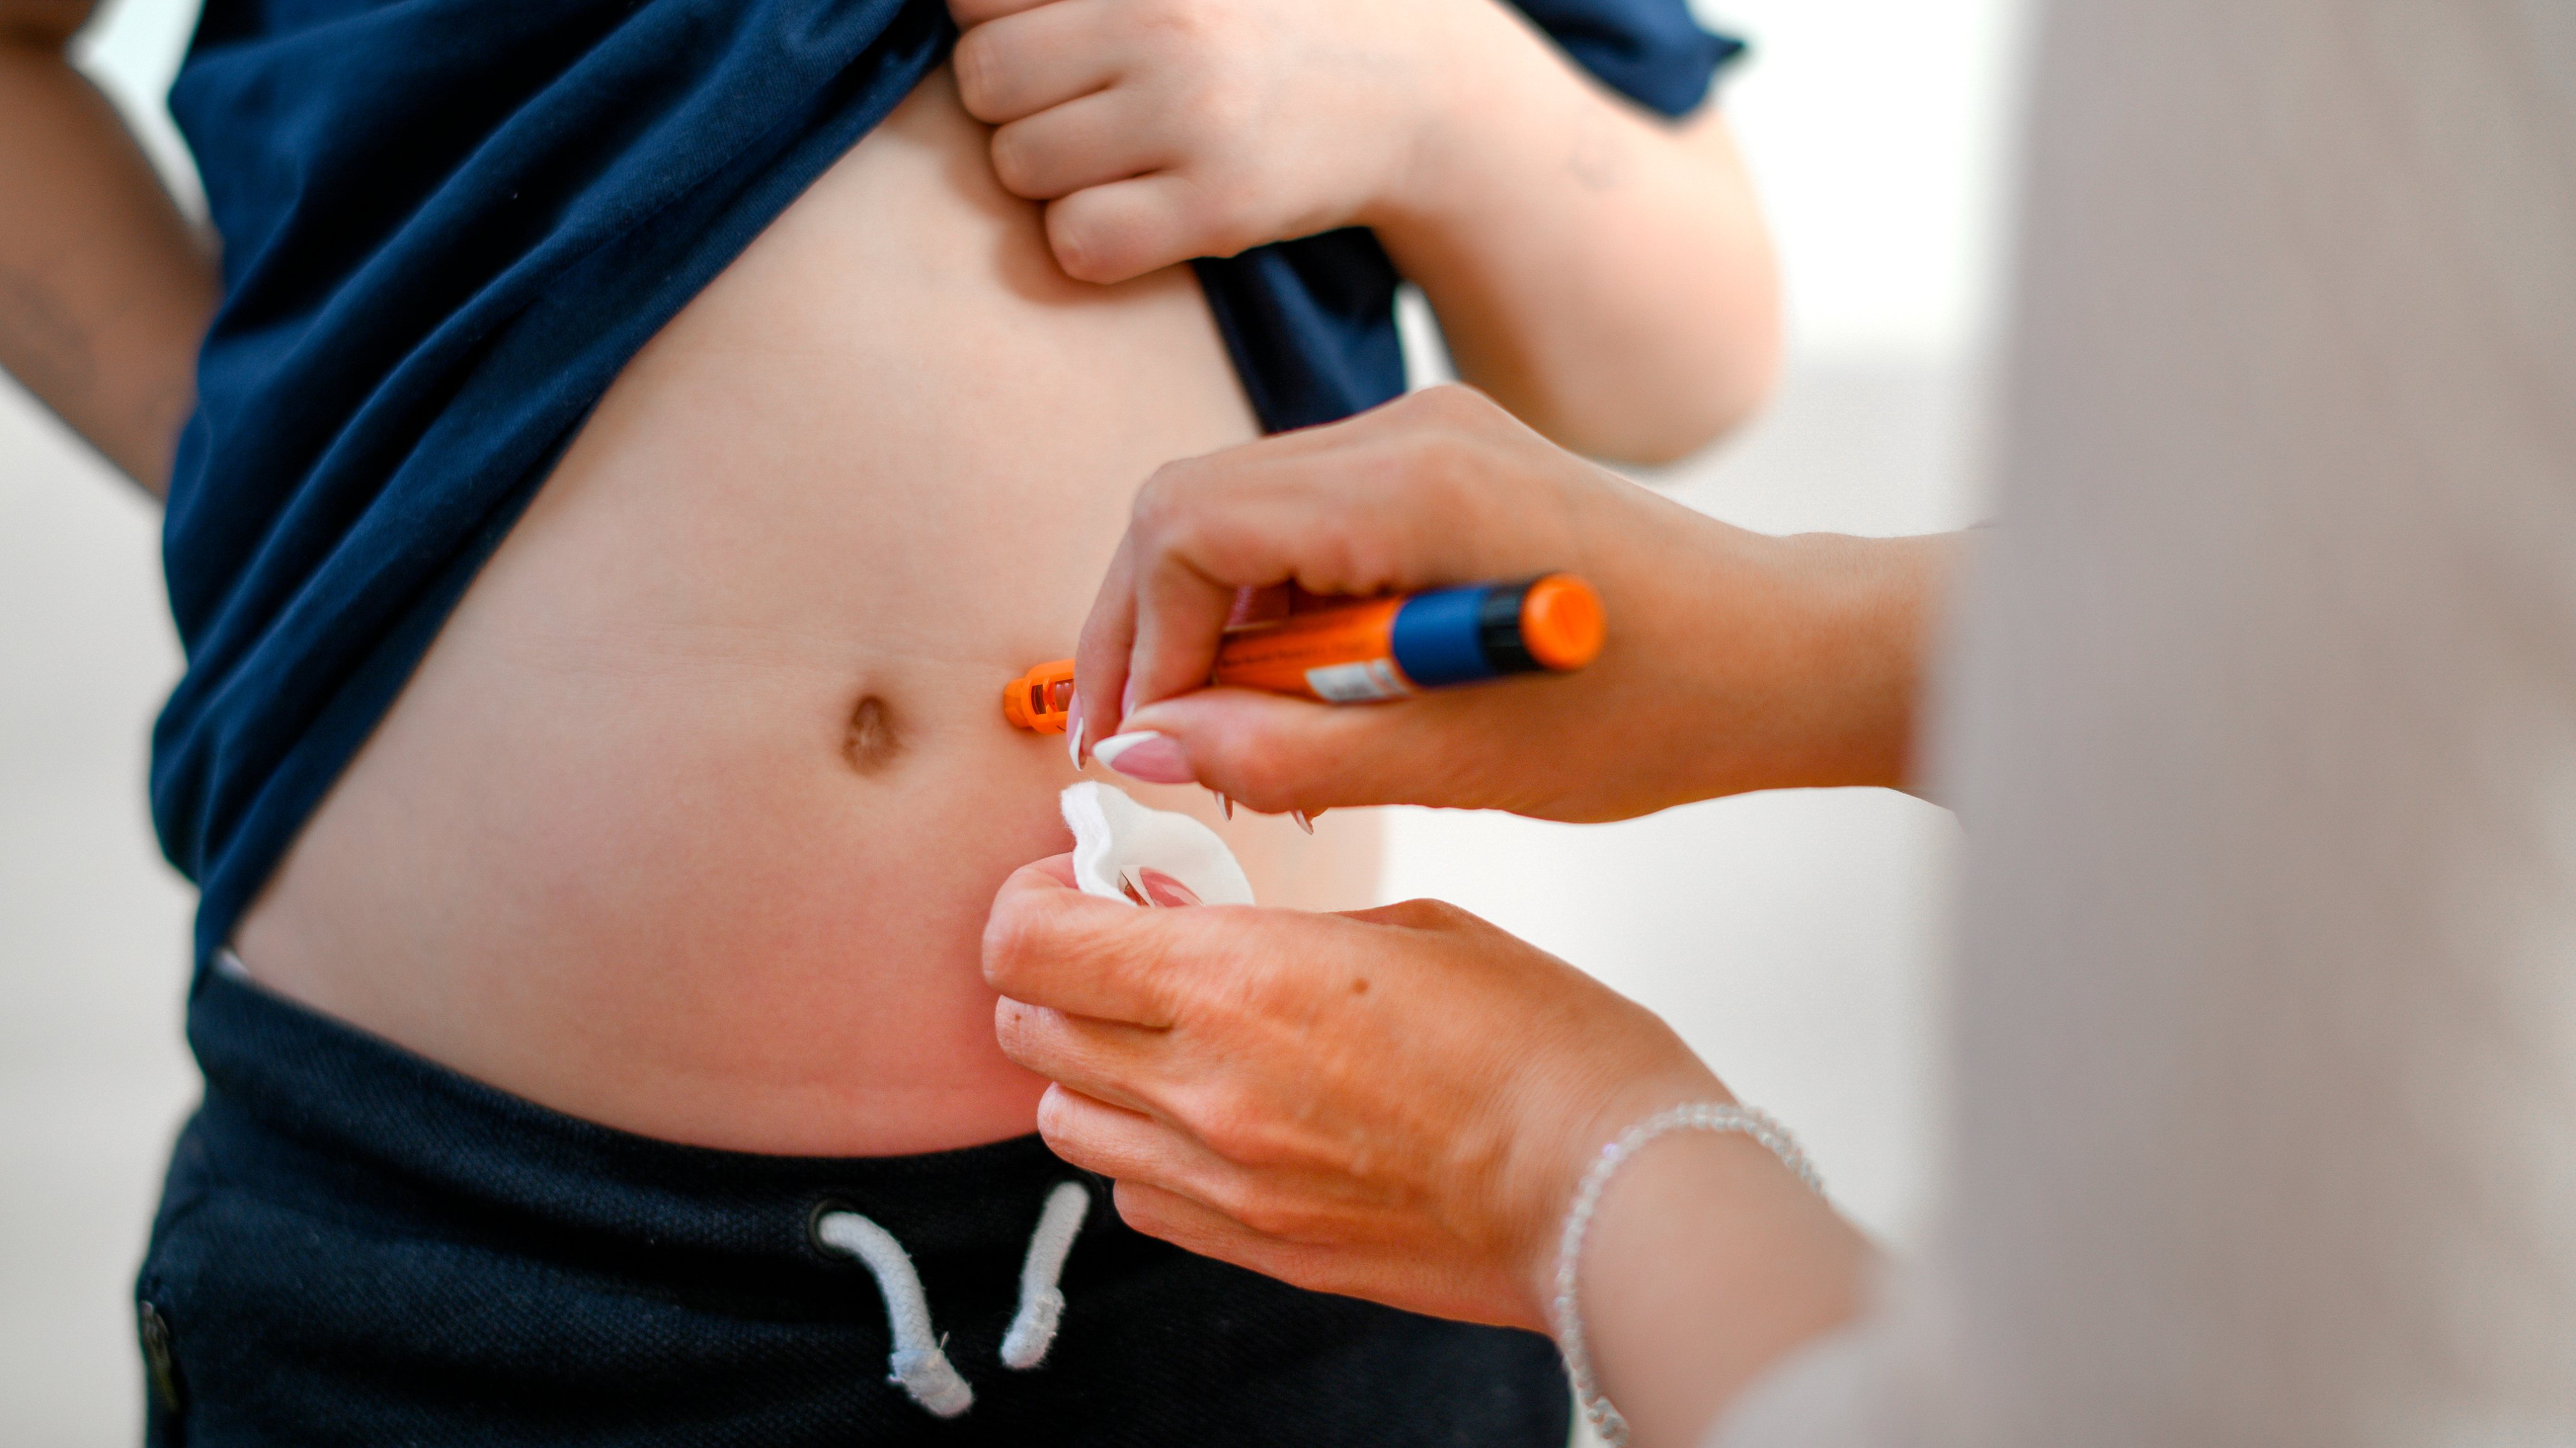 Boy taking an insulin shot at stomach